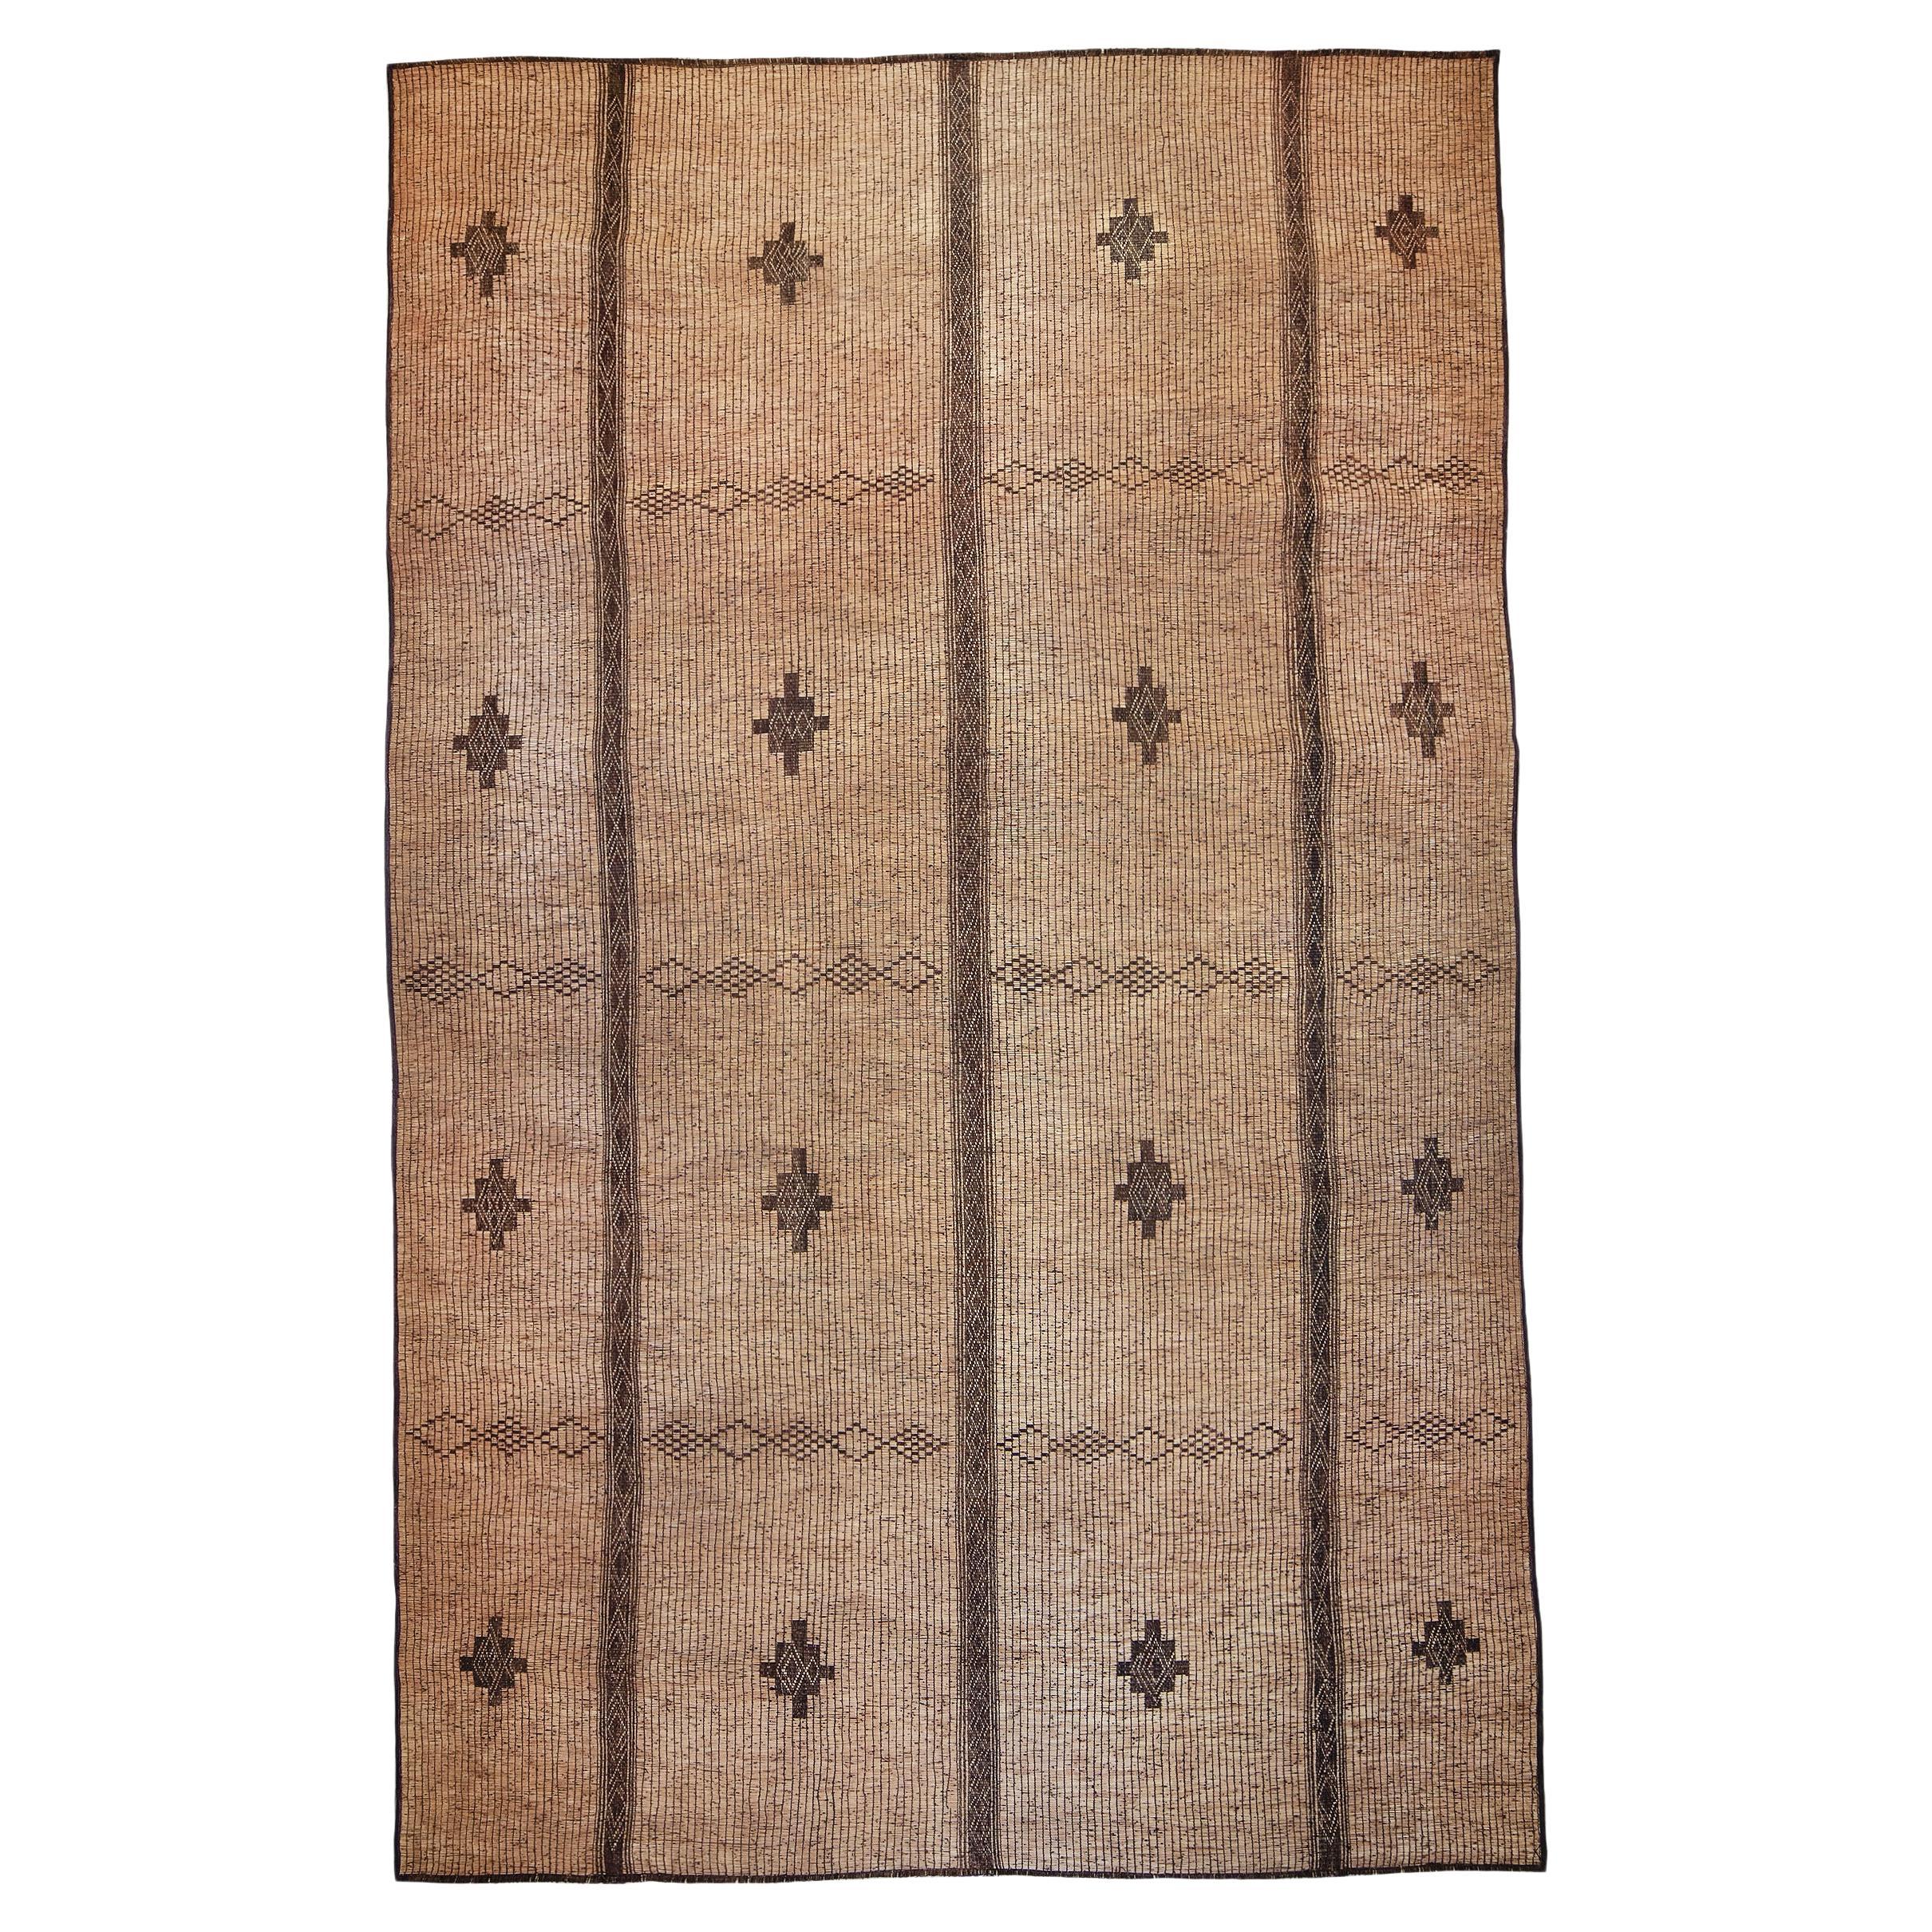 Tuareg-Teppich oder -Matte, Vintage, 20. Jahrhundert, Holz und Leder, Vorrätig